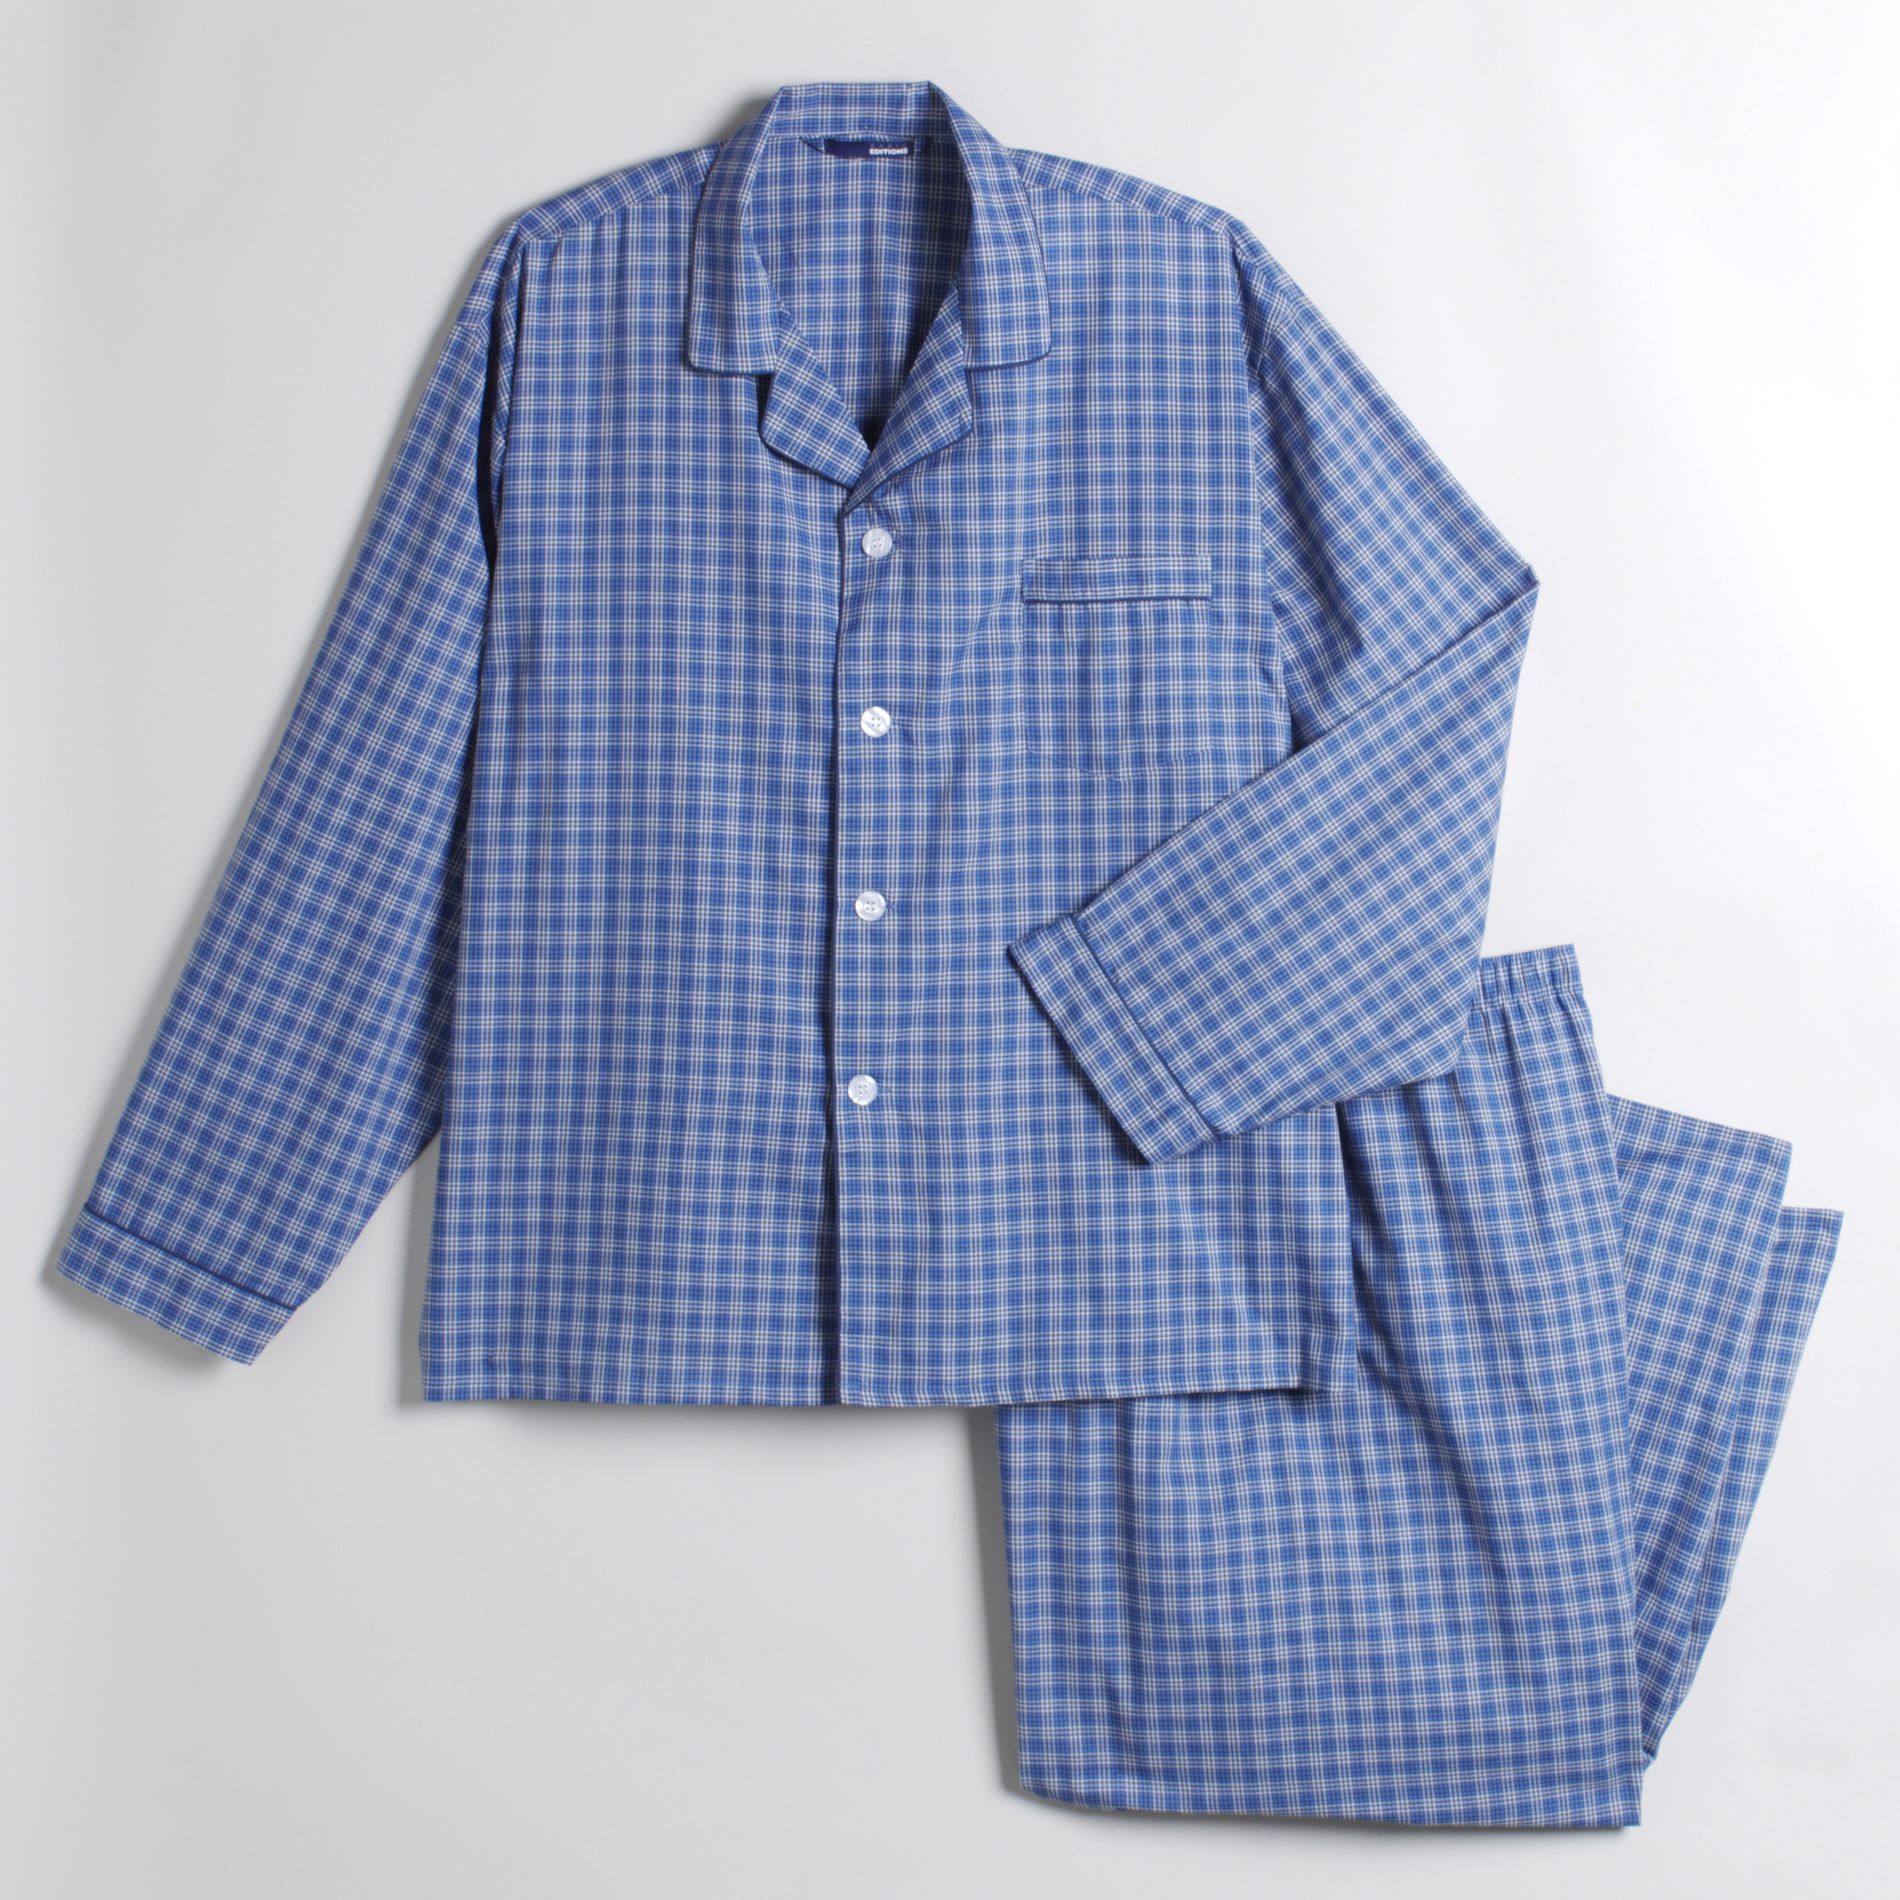 Basic Editions Men's Big & Tall Broadcloth Pajamas